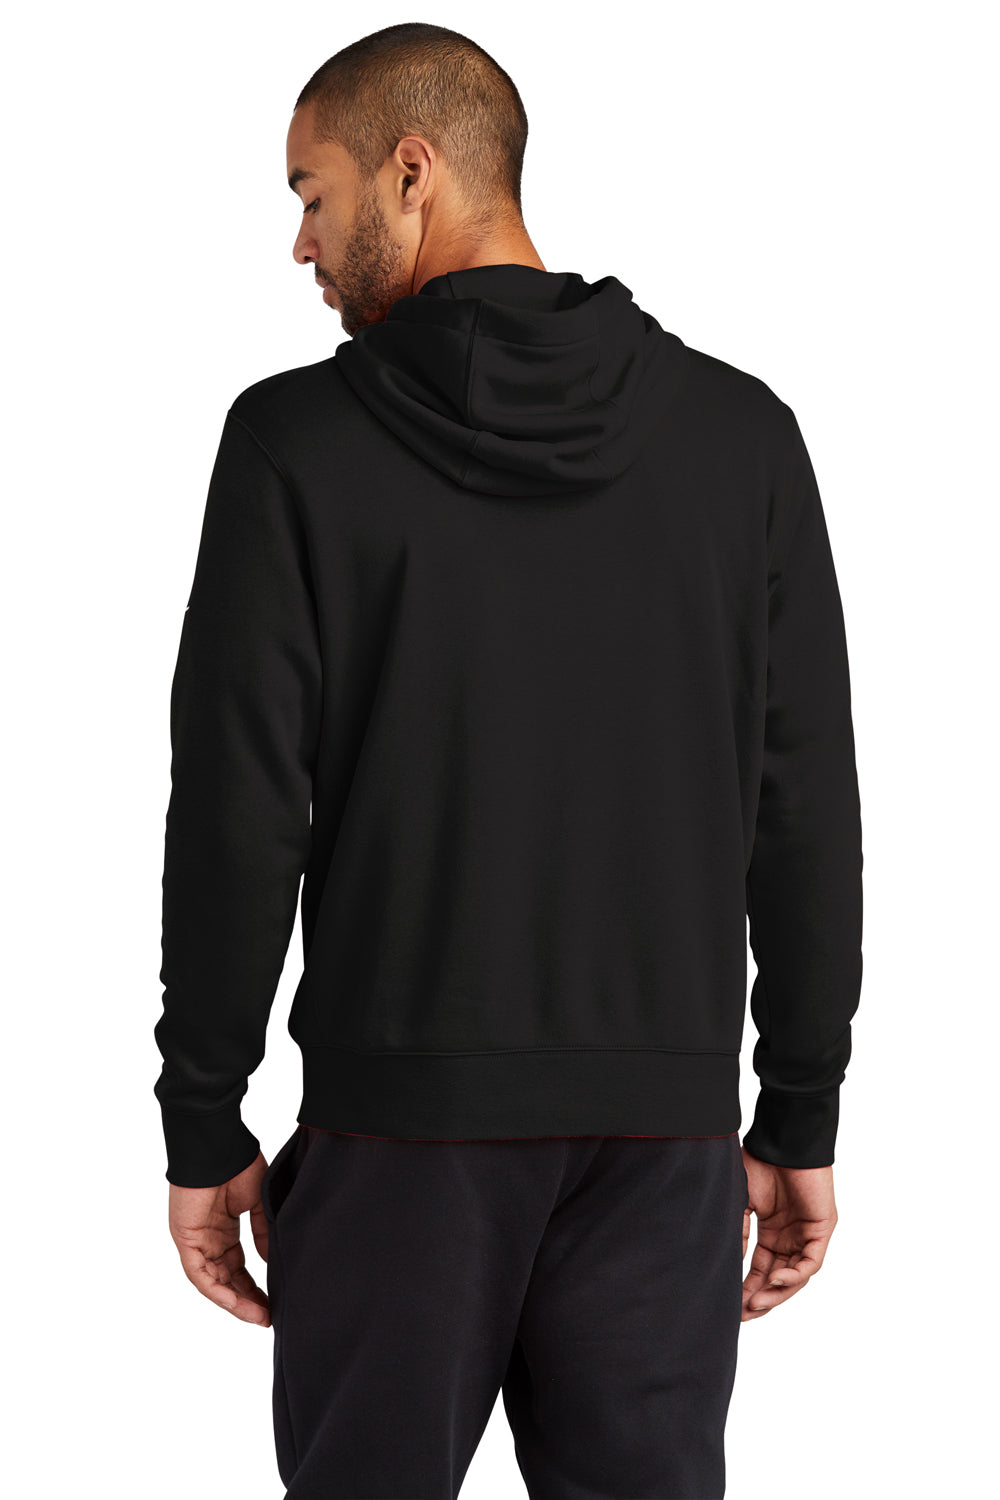 Nike NKDR1513 Mens Club Fleece Full Zip Hooded Sweatshirt Hoodie Black Model Back